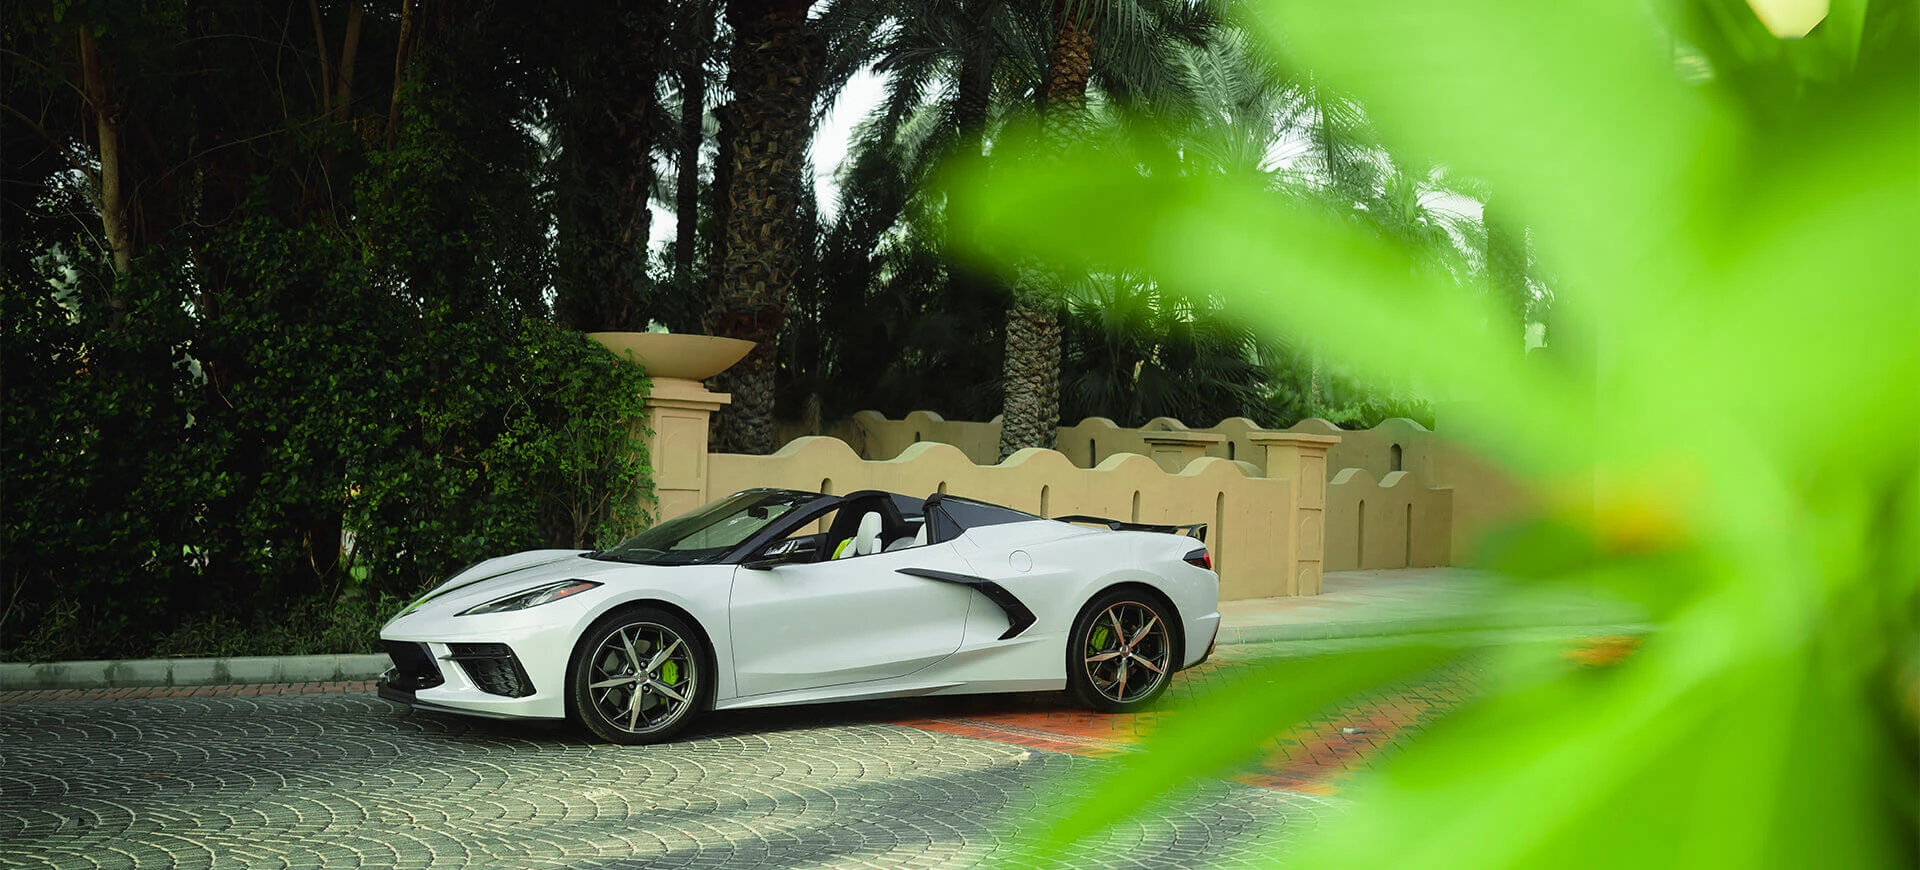 Alquile un Chevrolet Corvette en Dubai